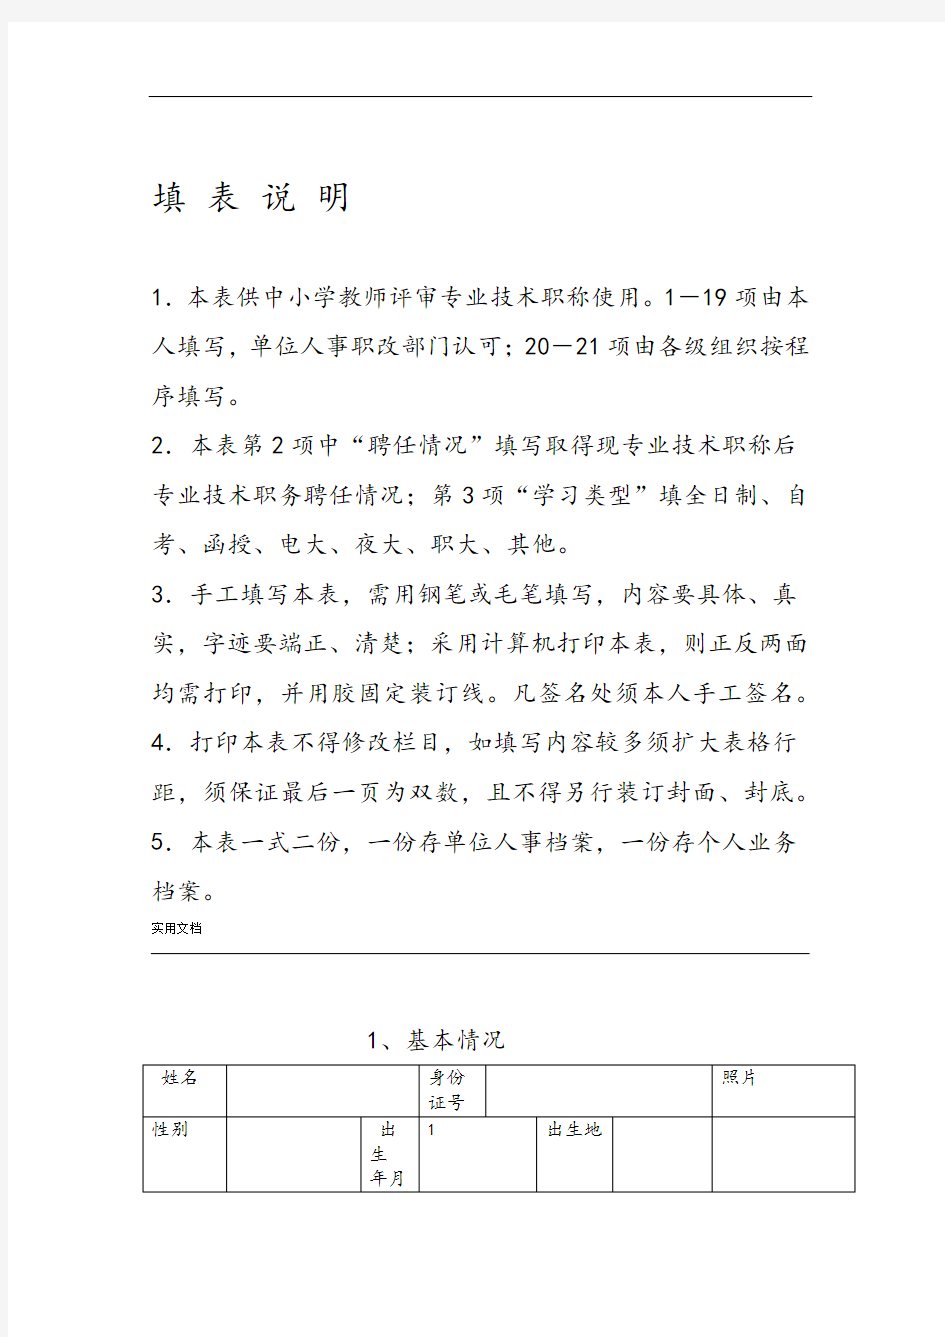 新21张表湖南省中小学教师系列专业技术职称职务评审表